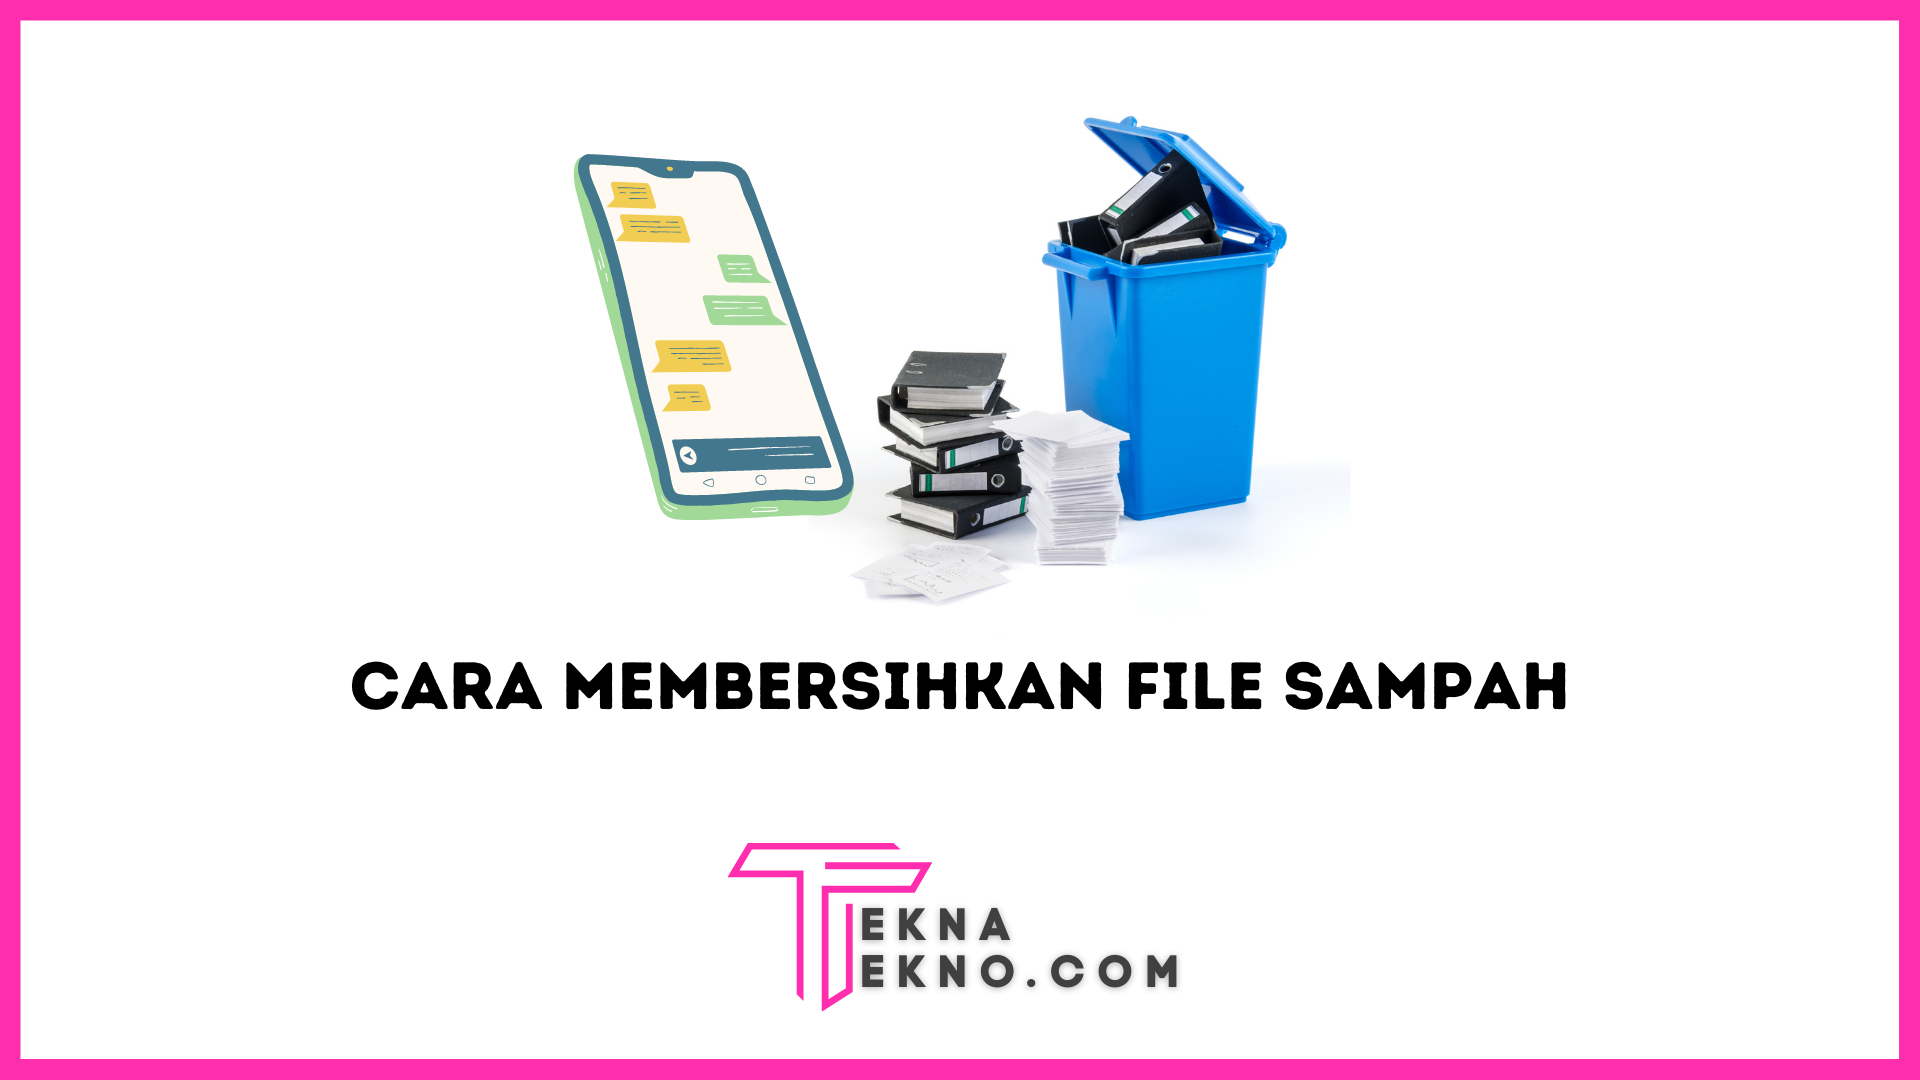 3 Cara Membersihkan File Sampah di Android dengan Mudah